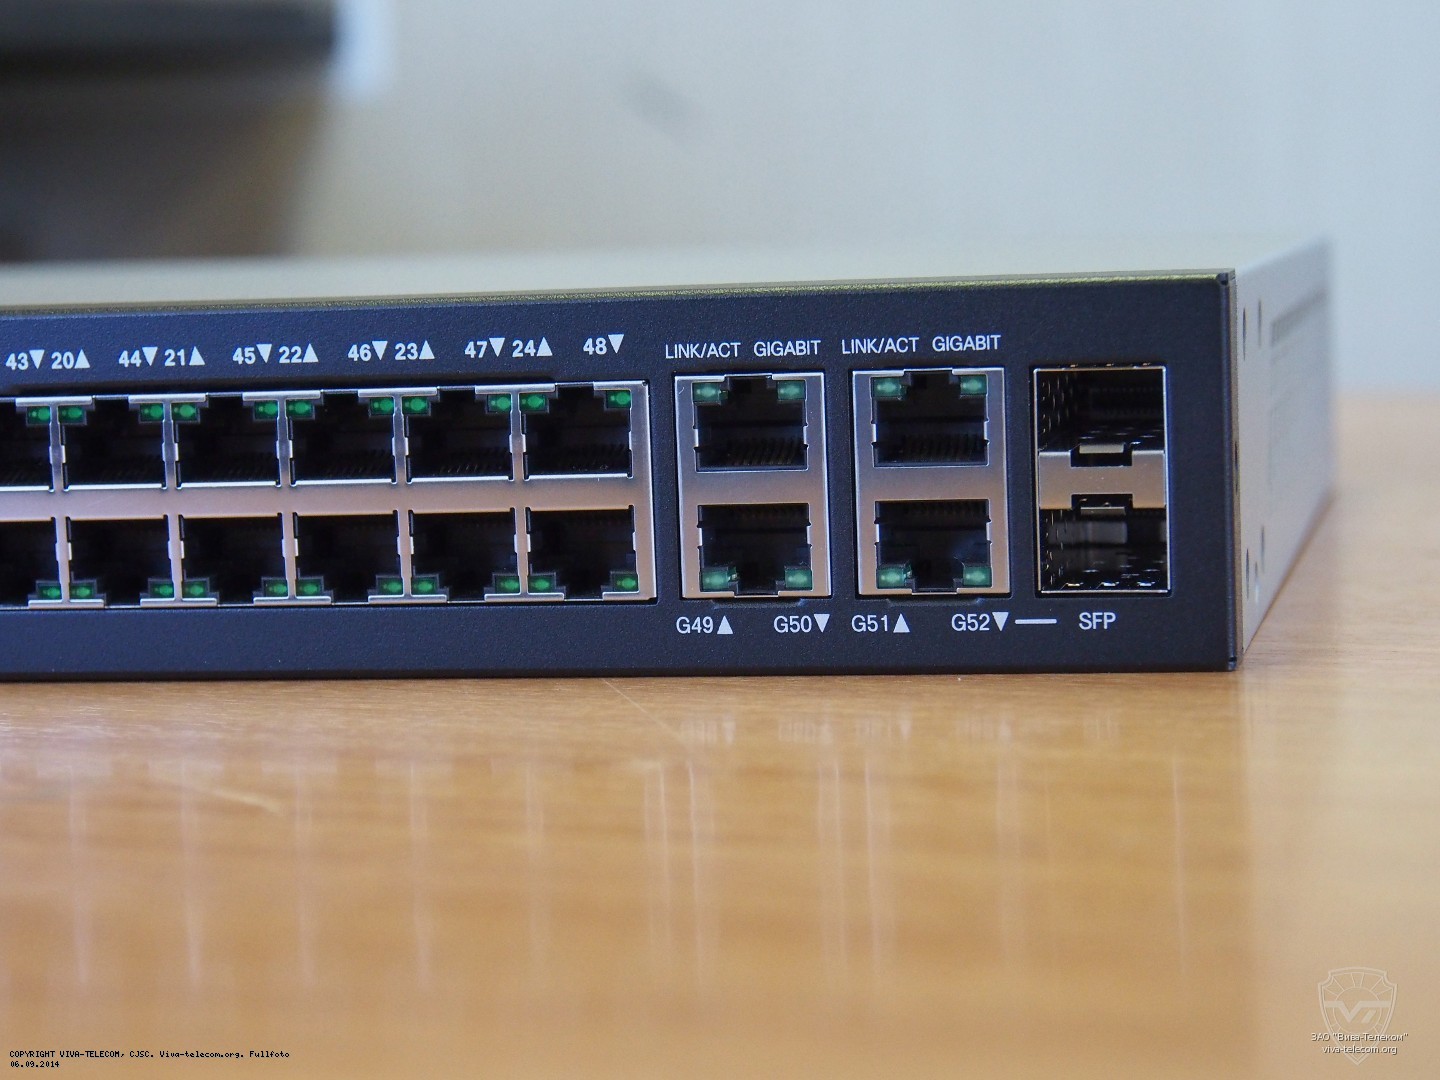      Cisco SG300-52